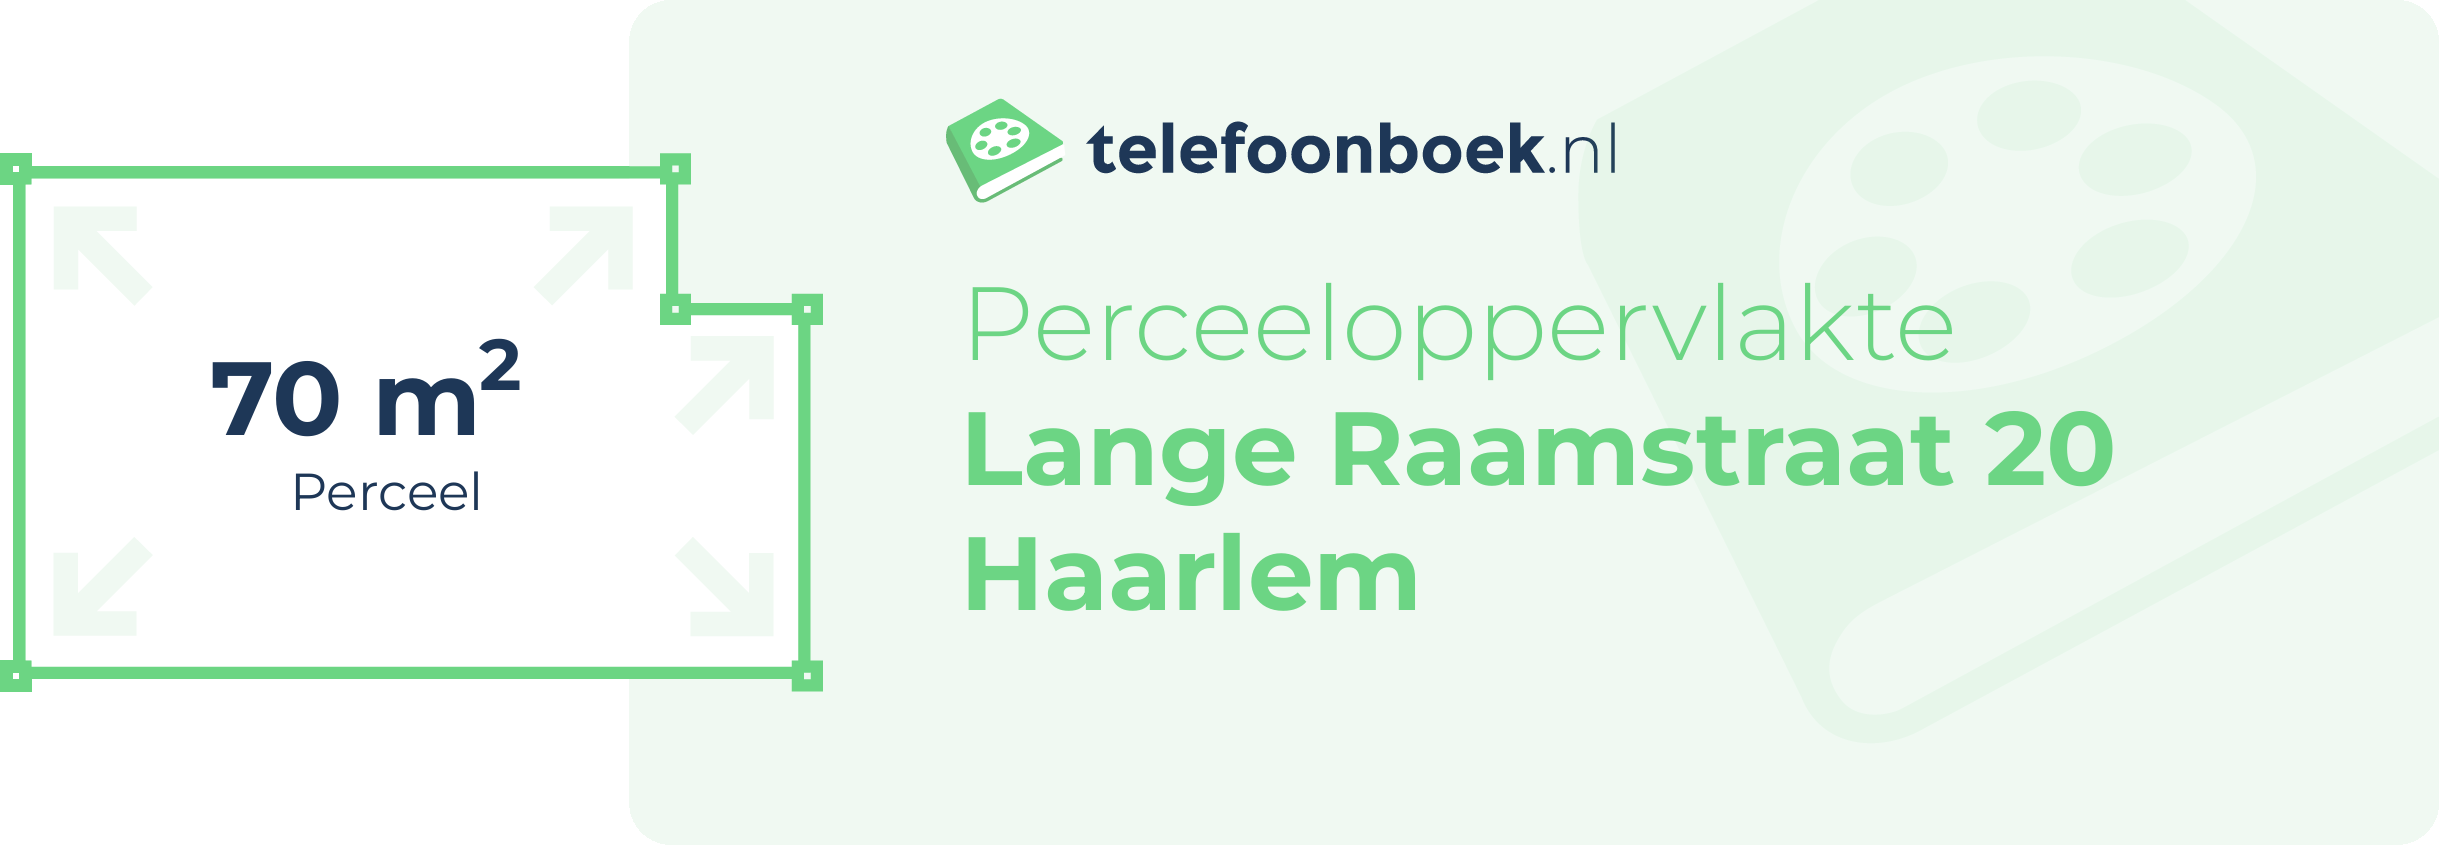 Perceeloppervlakte Lange Raamstraat 20 Haarlem